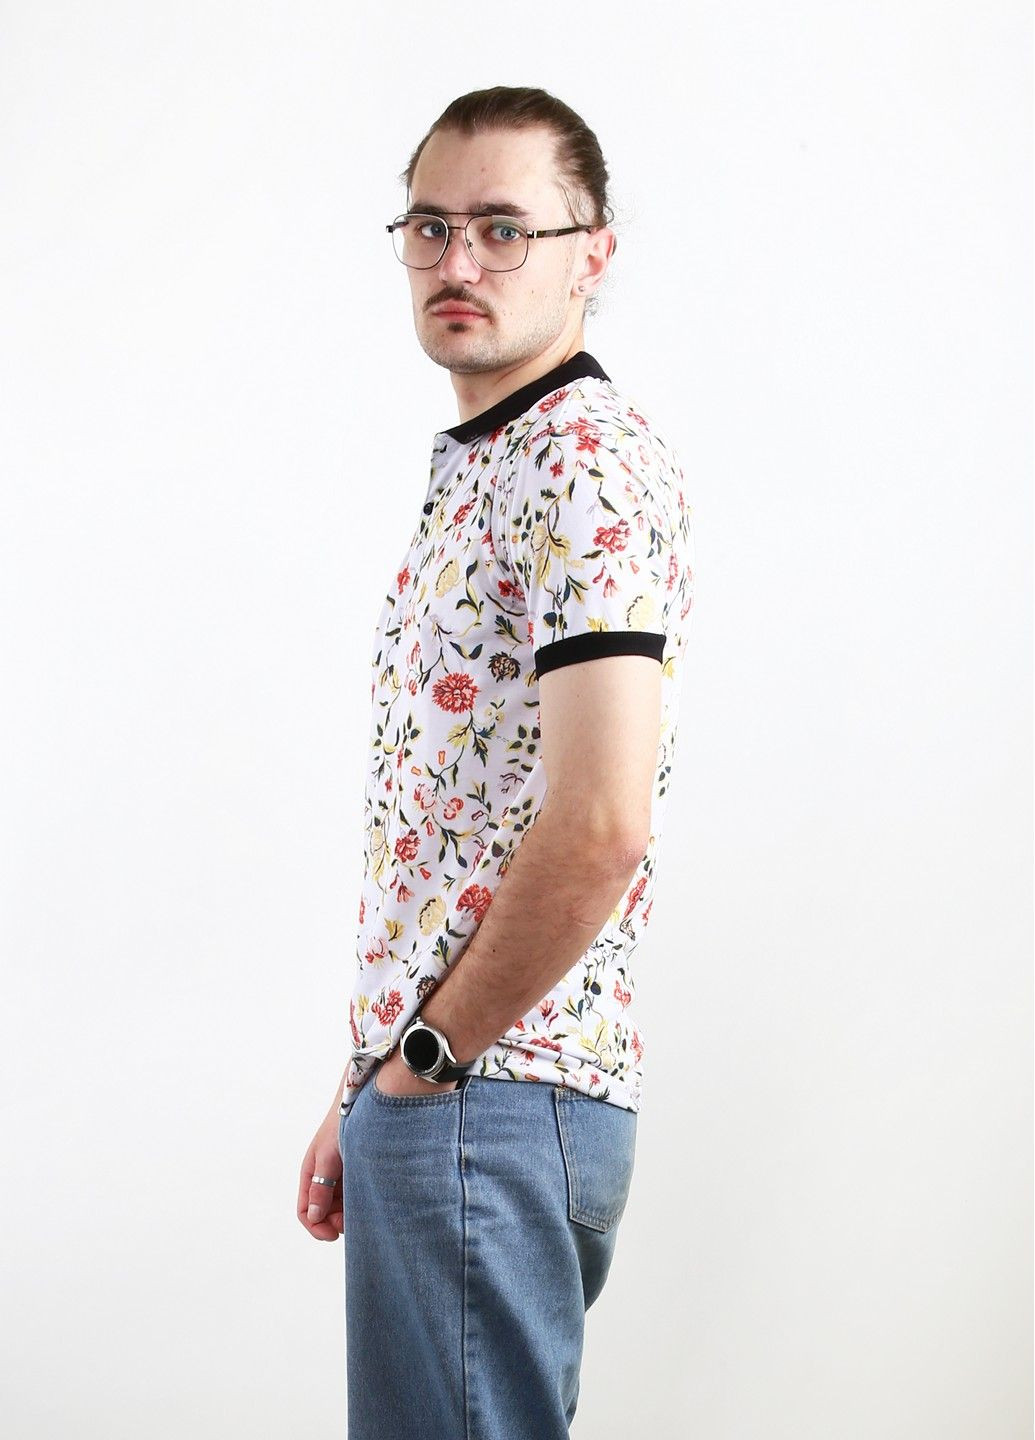 Цветная футболка-поло для мужчин Mtp с цветочным принтом